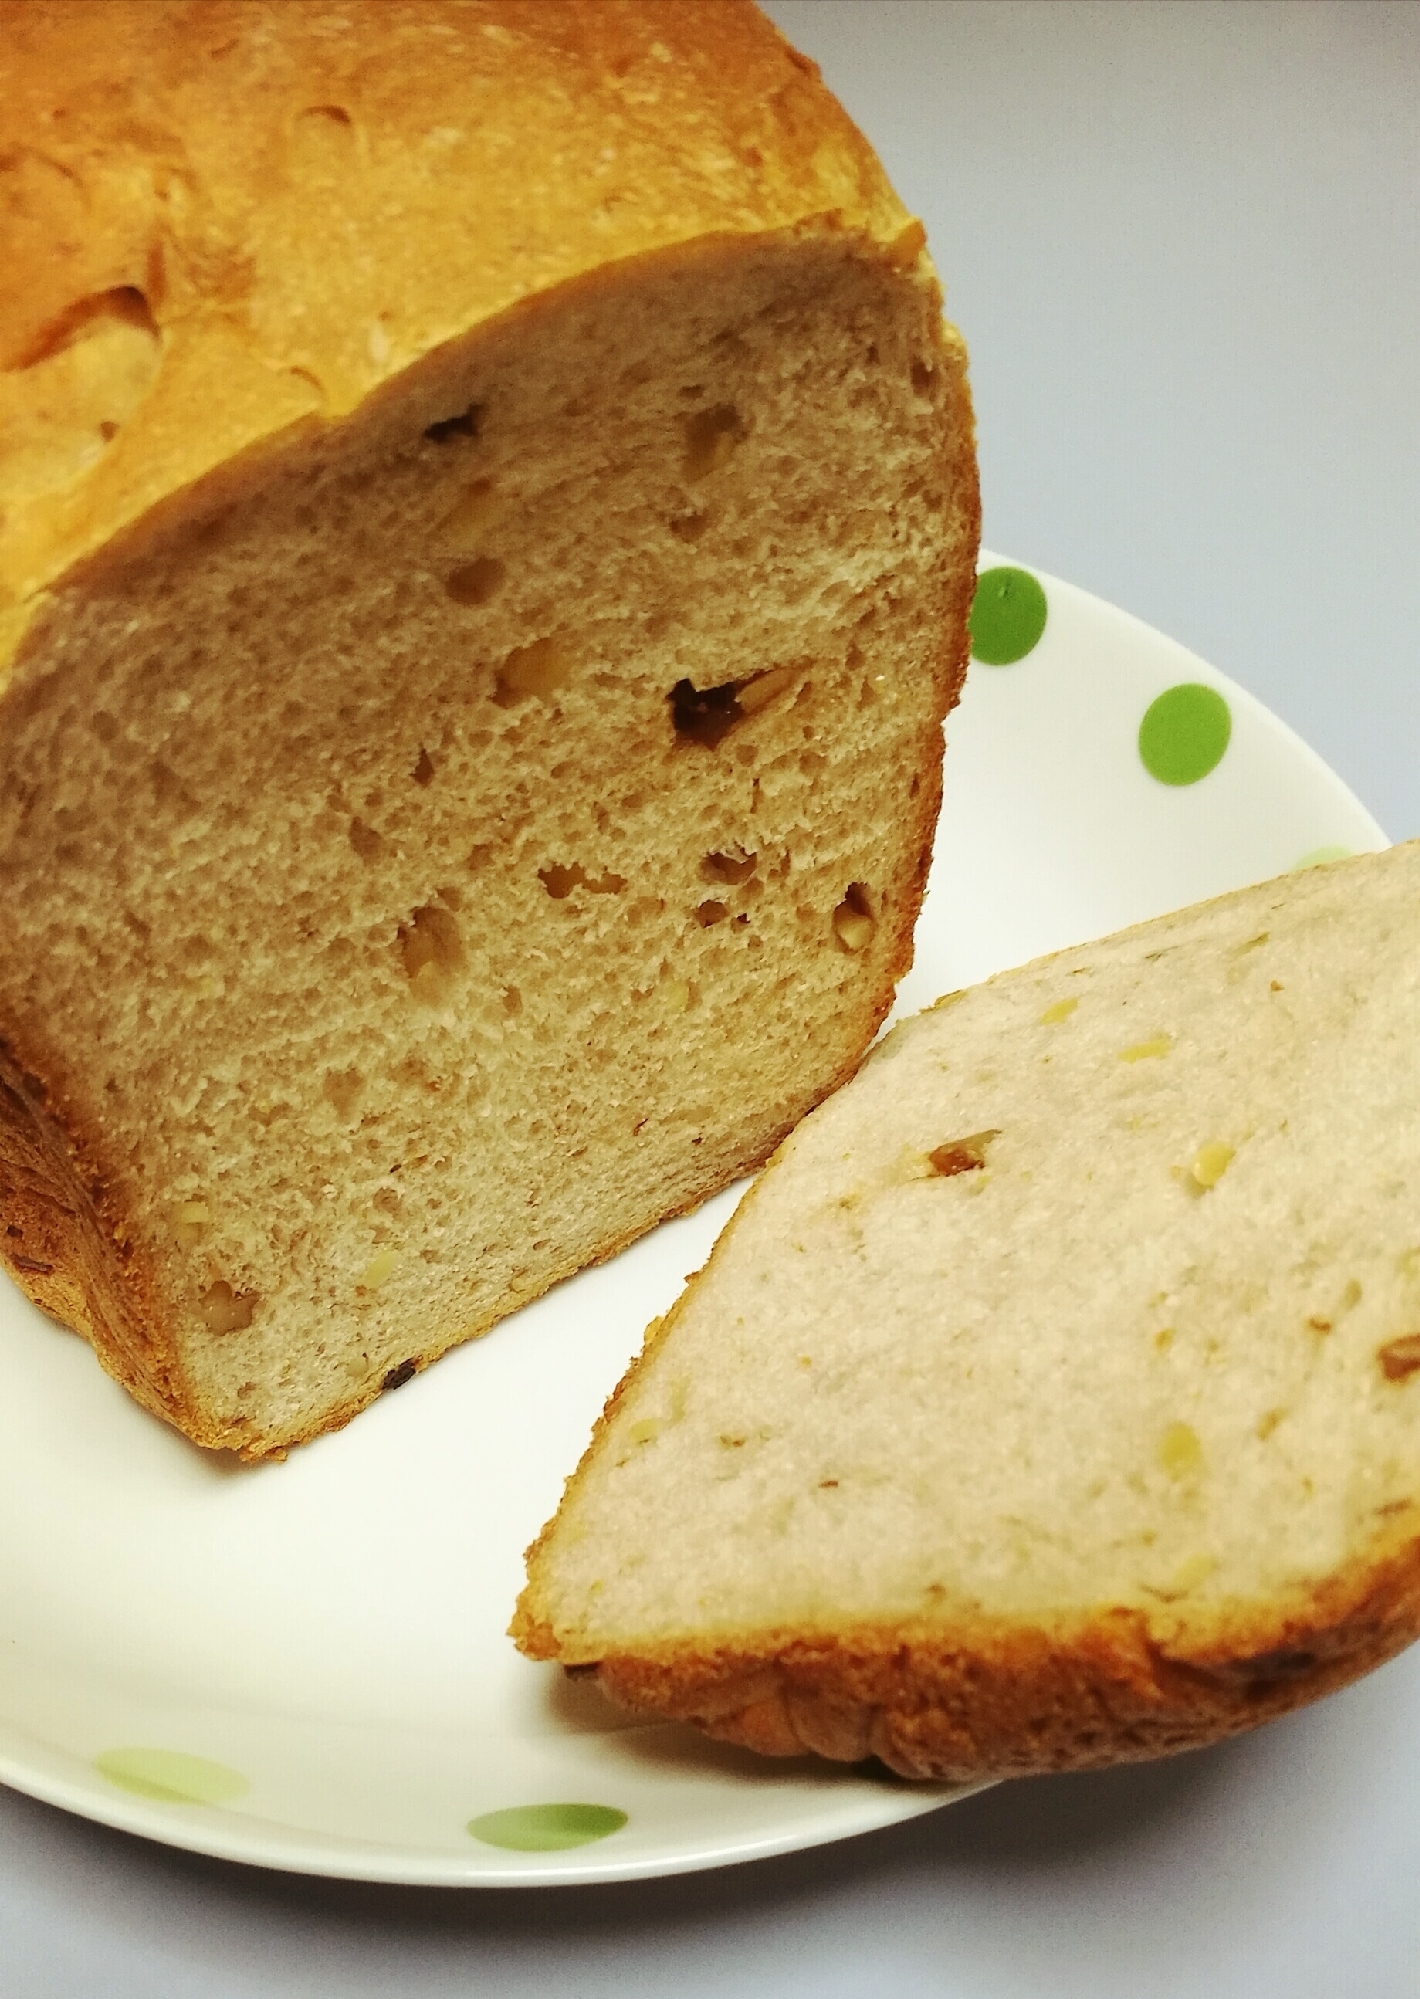 ☆HBで簡単☆クルミ&レーズンのモチフワ食パン♪